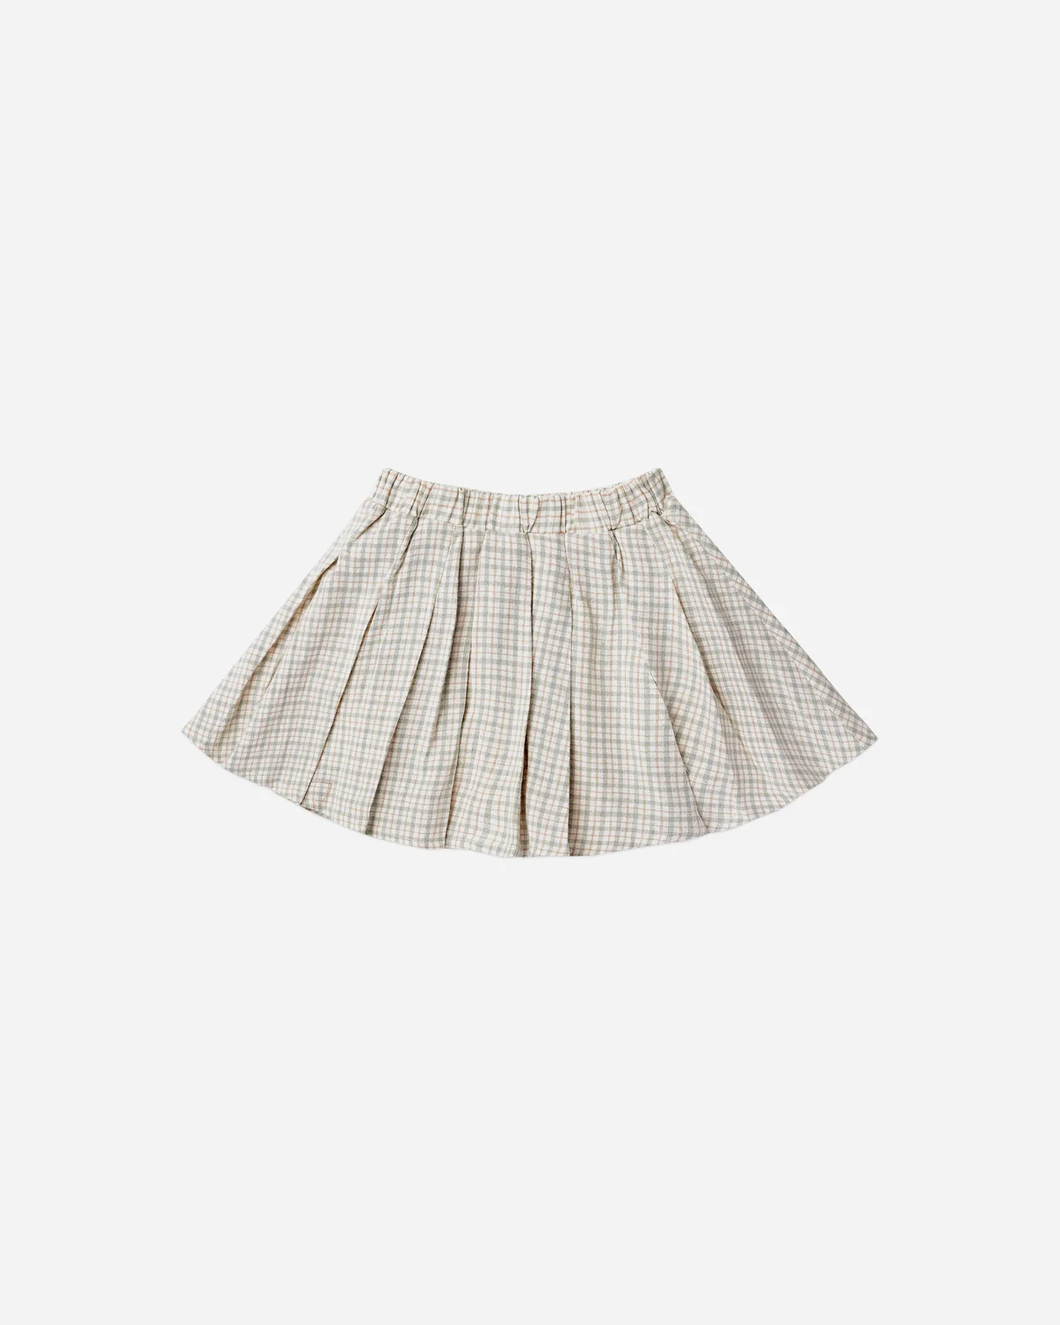 Rylee + Cru Pleated Skirt - Laurel Plaid - 2/3Y, 4/5Y, 6/7Y